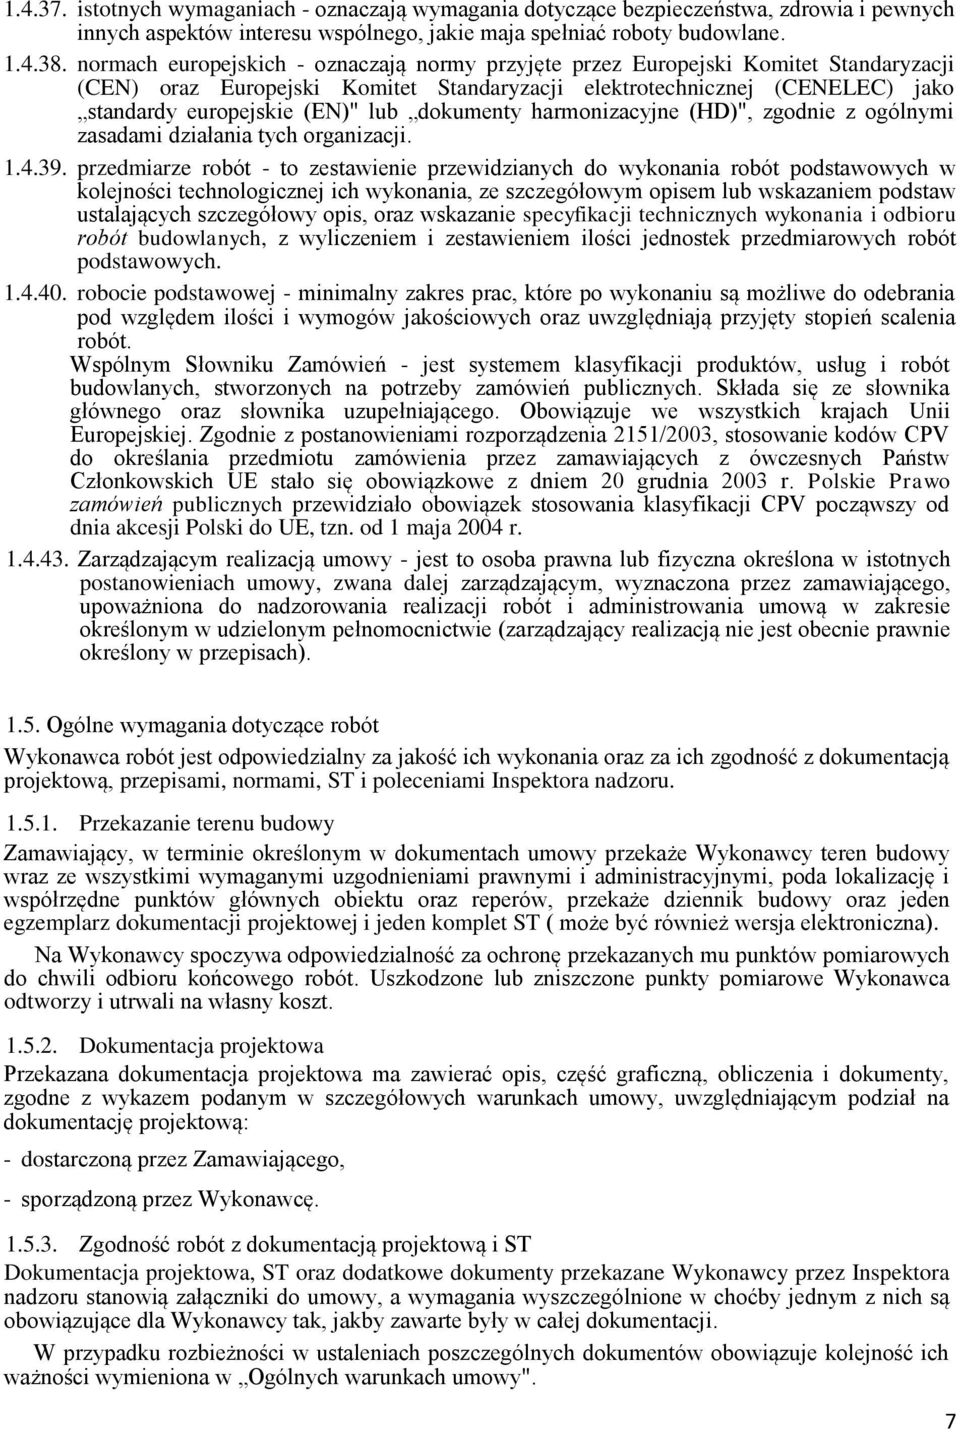 dokumenty harmonizacyjne (HD)", zgodnie z ogólnymi zasadami działania tych organizacji. 1.4.39.